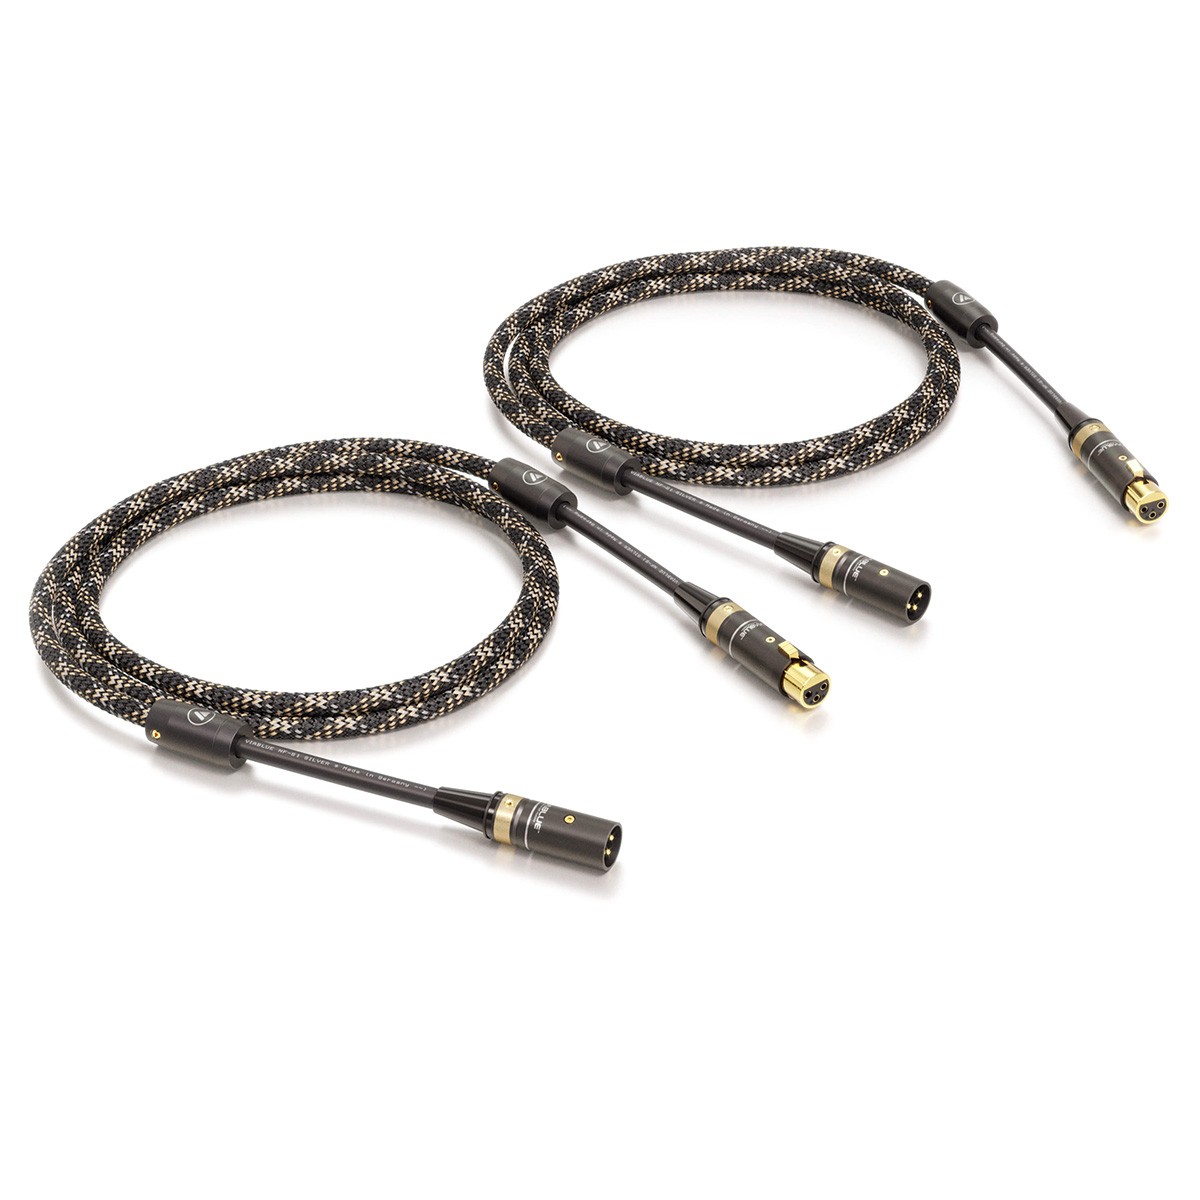 VIABLUE NF-S1 QUATTRO Cable Mono XLR 5m (Pair)